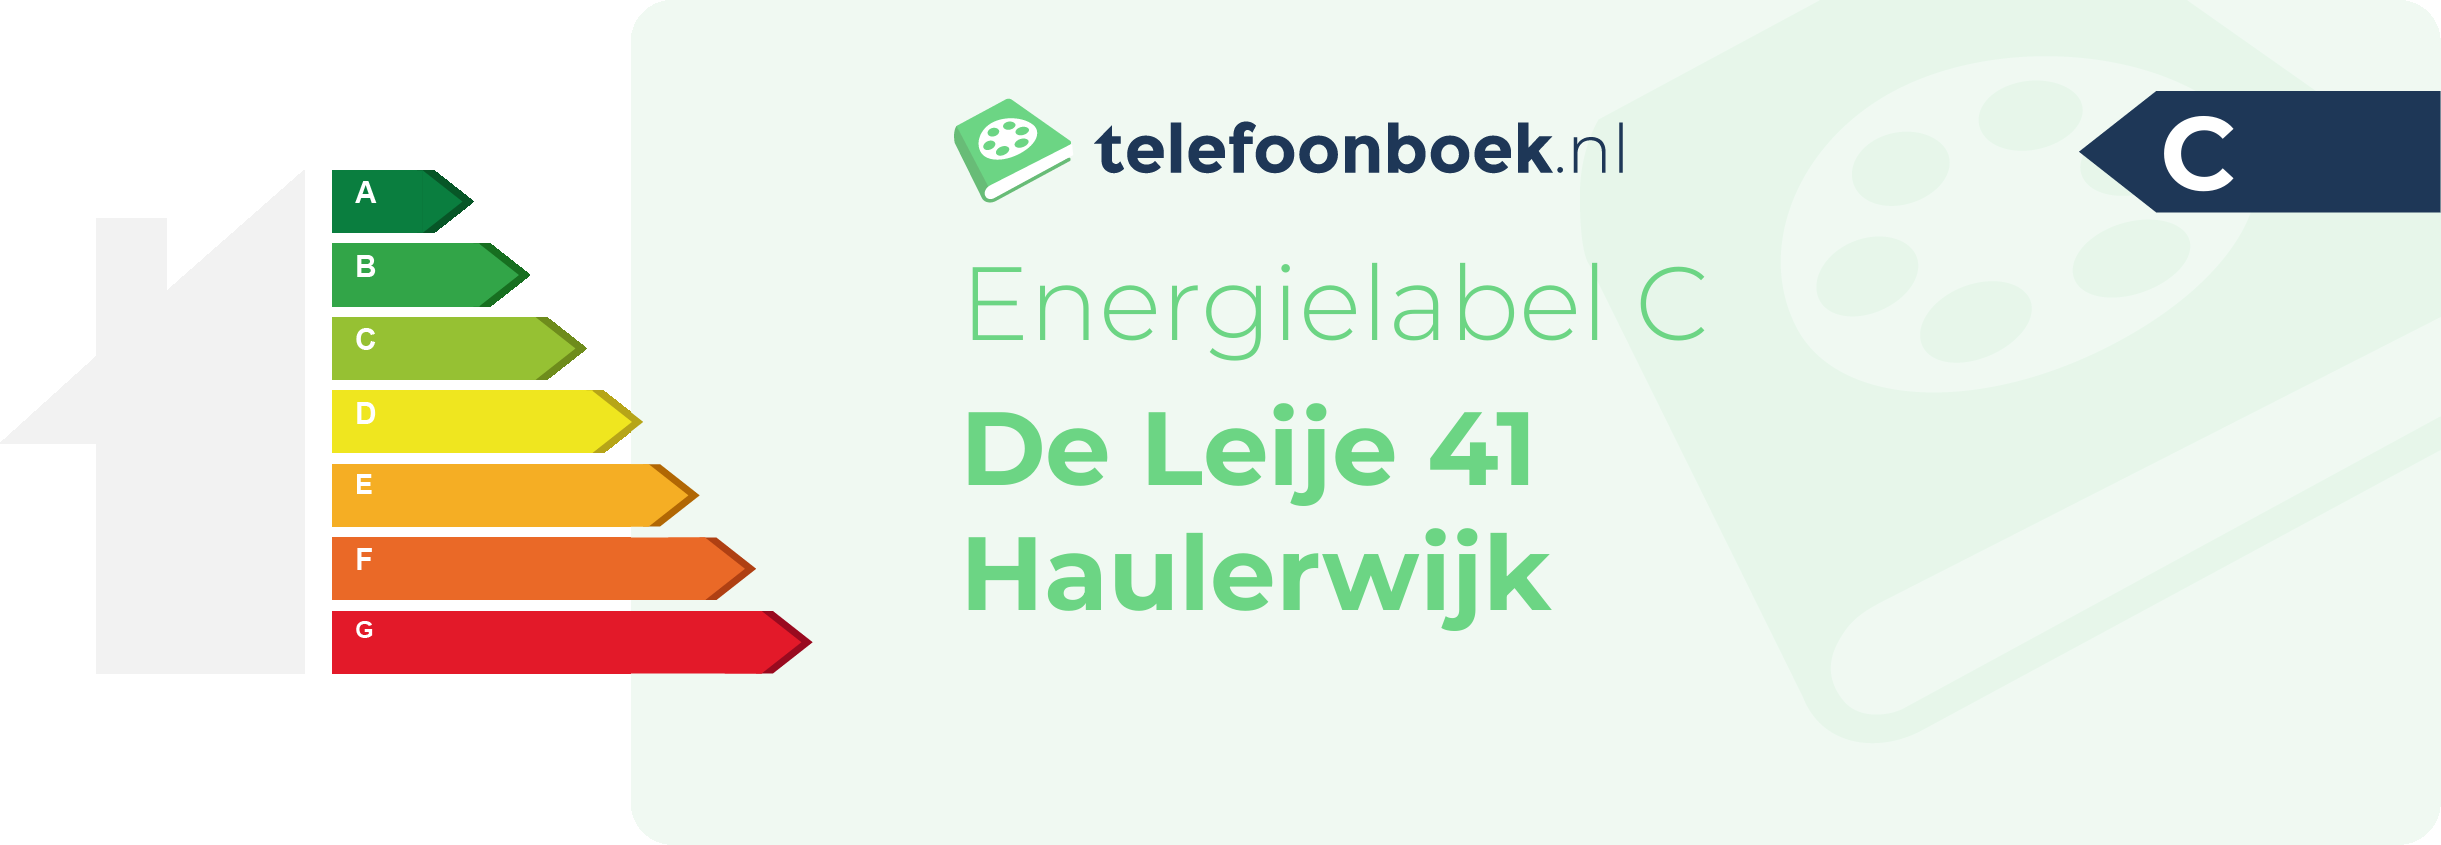 Energielabel De Leije 41 Haulerwijk